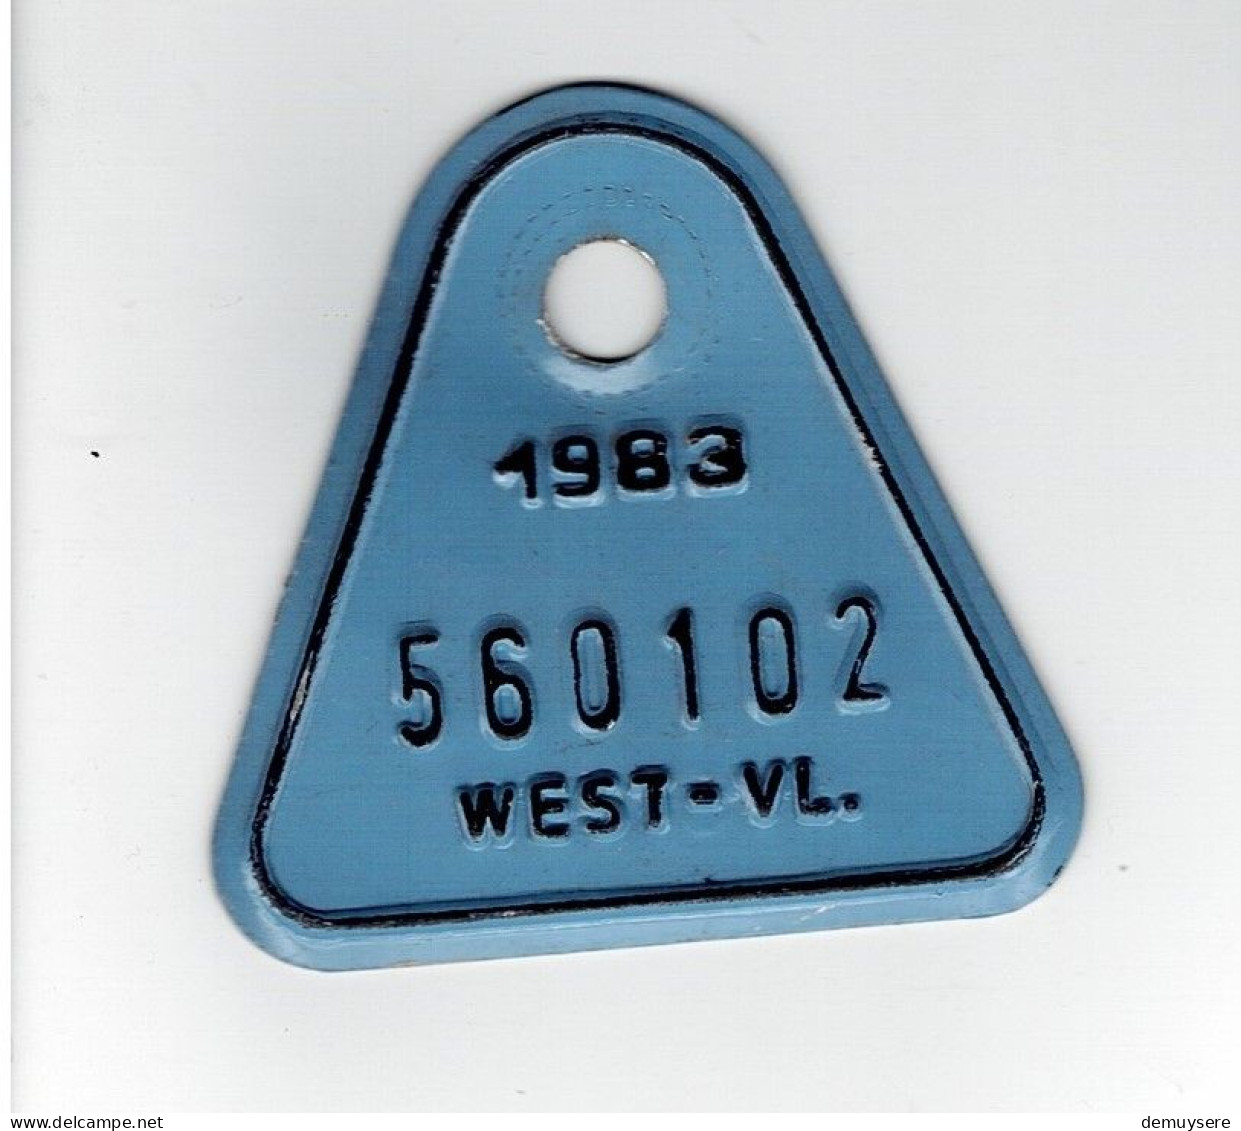 LADE D - FIETSPLAAT - 1983  -  WEST-VL - 560102 - Number Plates